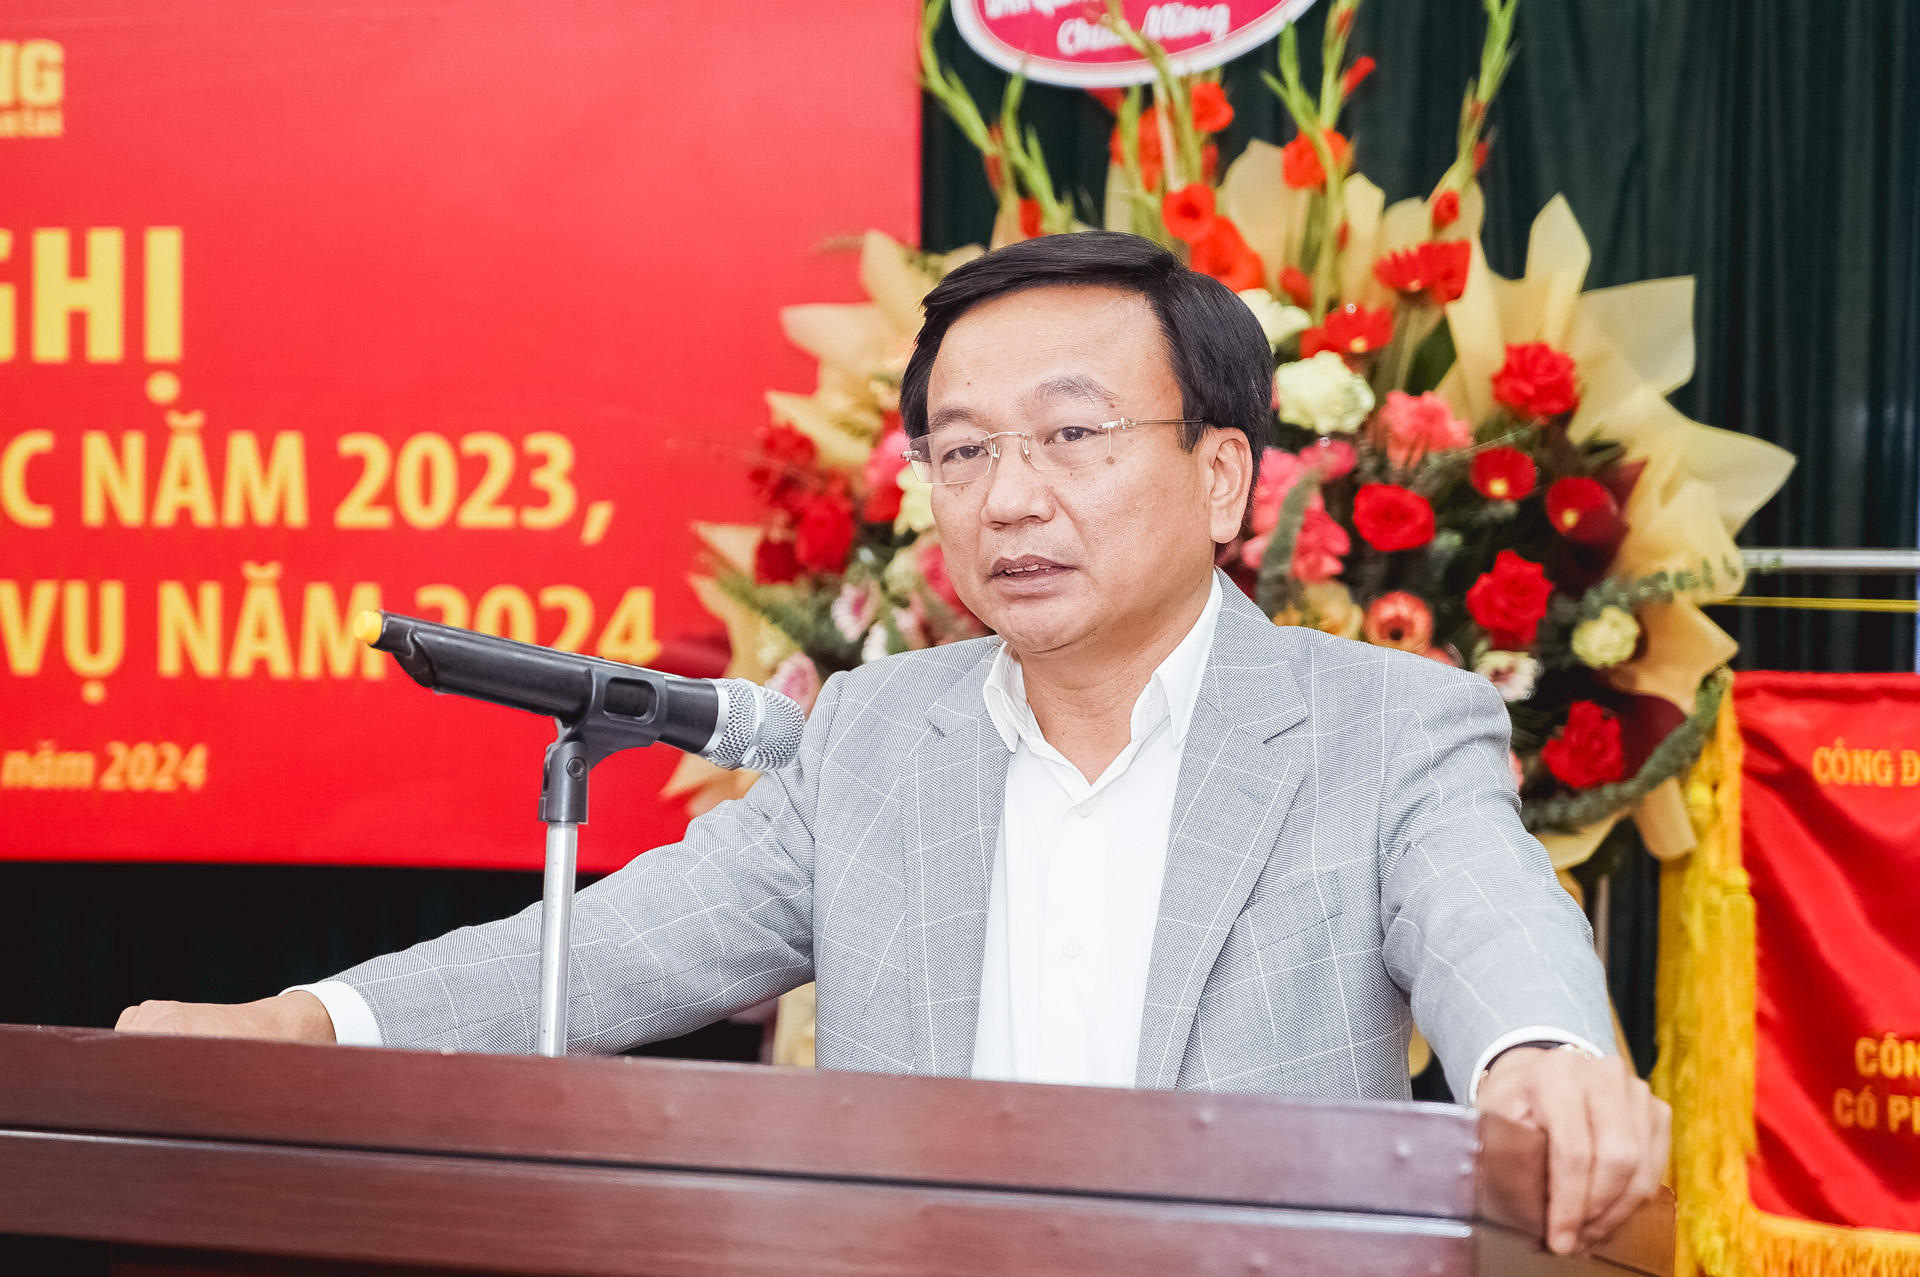 Thứ trưởng Nguyễn Danh Huy: "Tôi tin tưởng trên những gương mặt rạng ngời ở Tạp chí GTVT"- Ảnh 4.